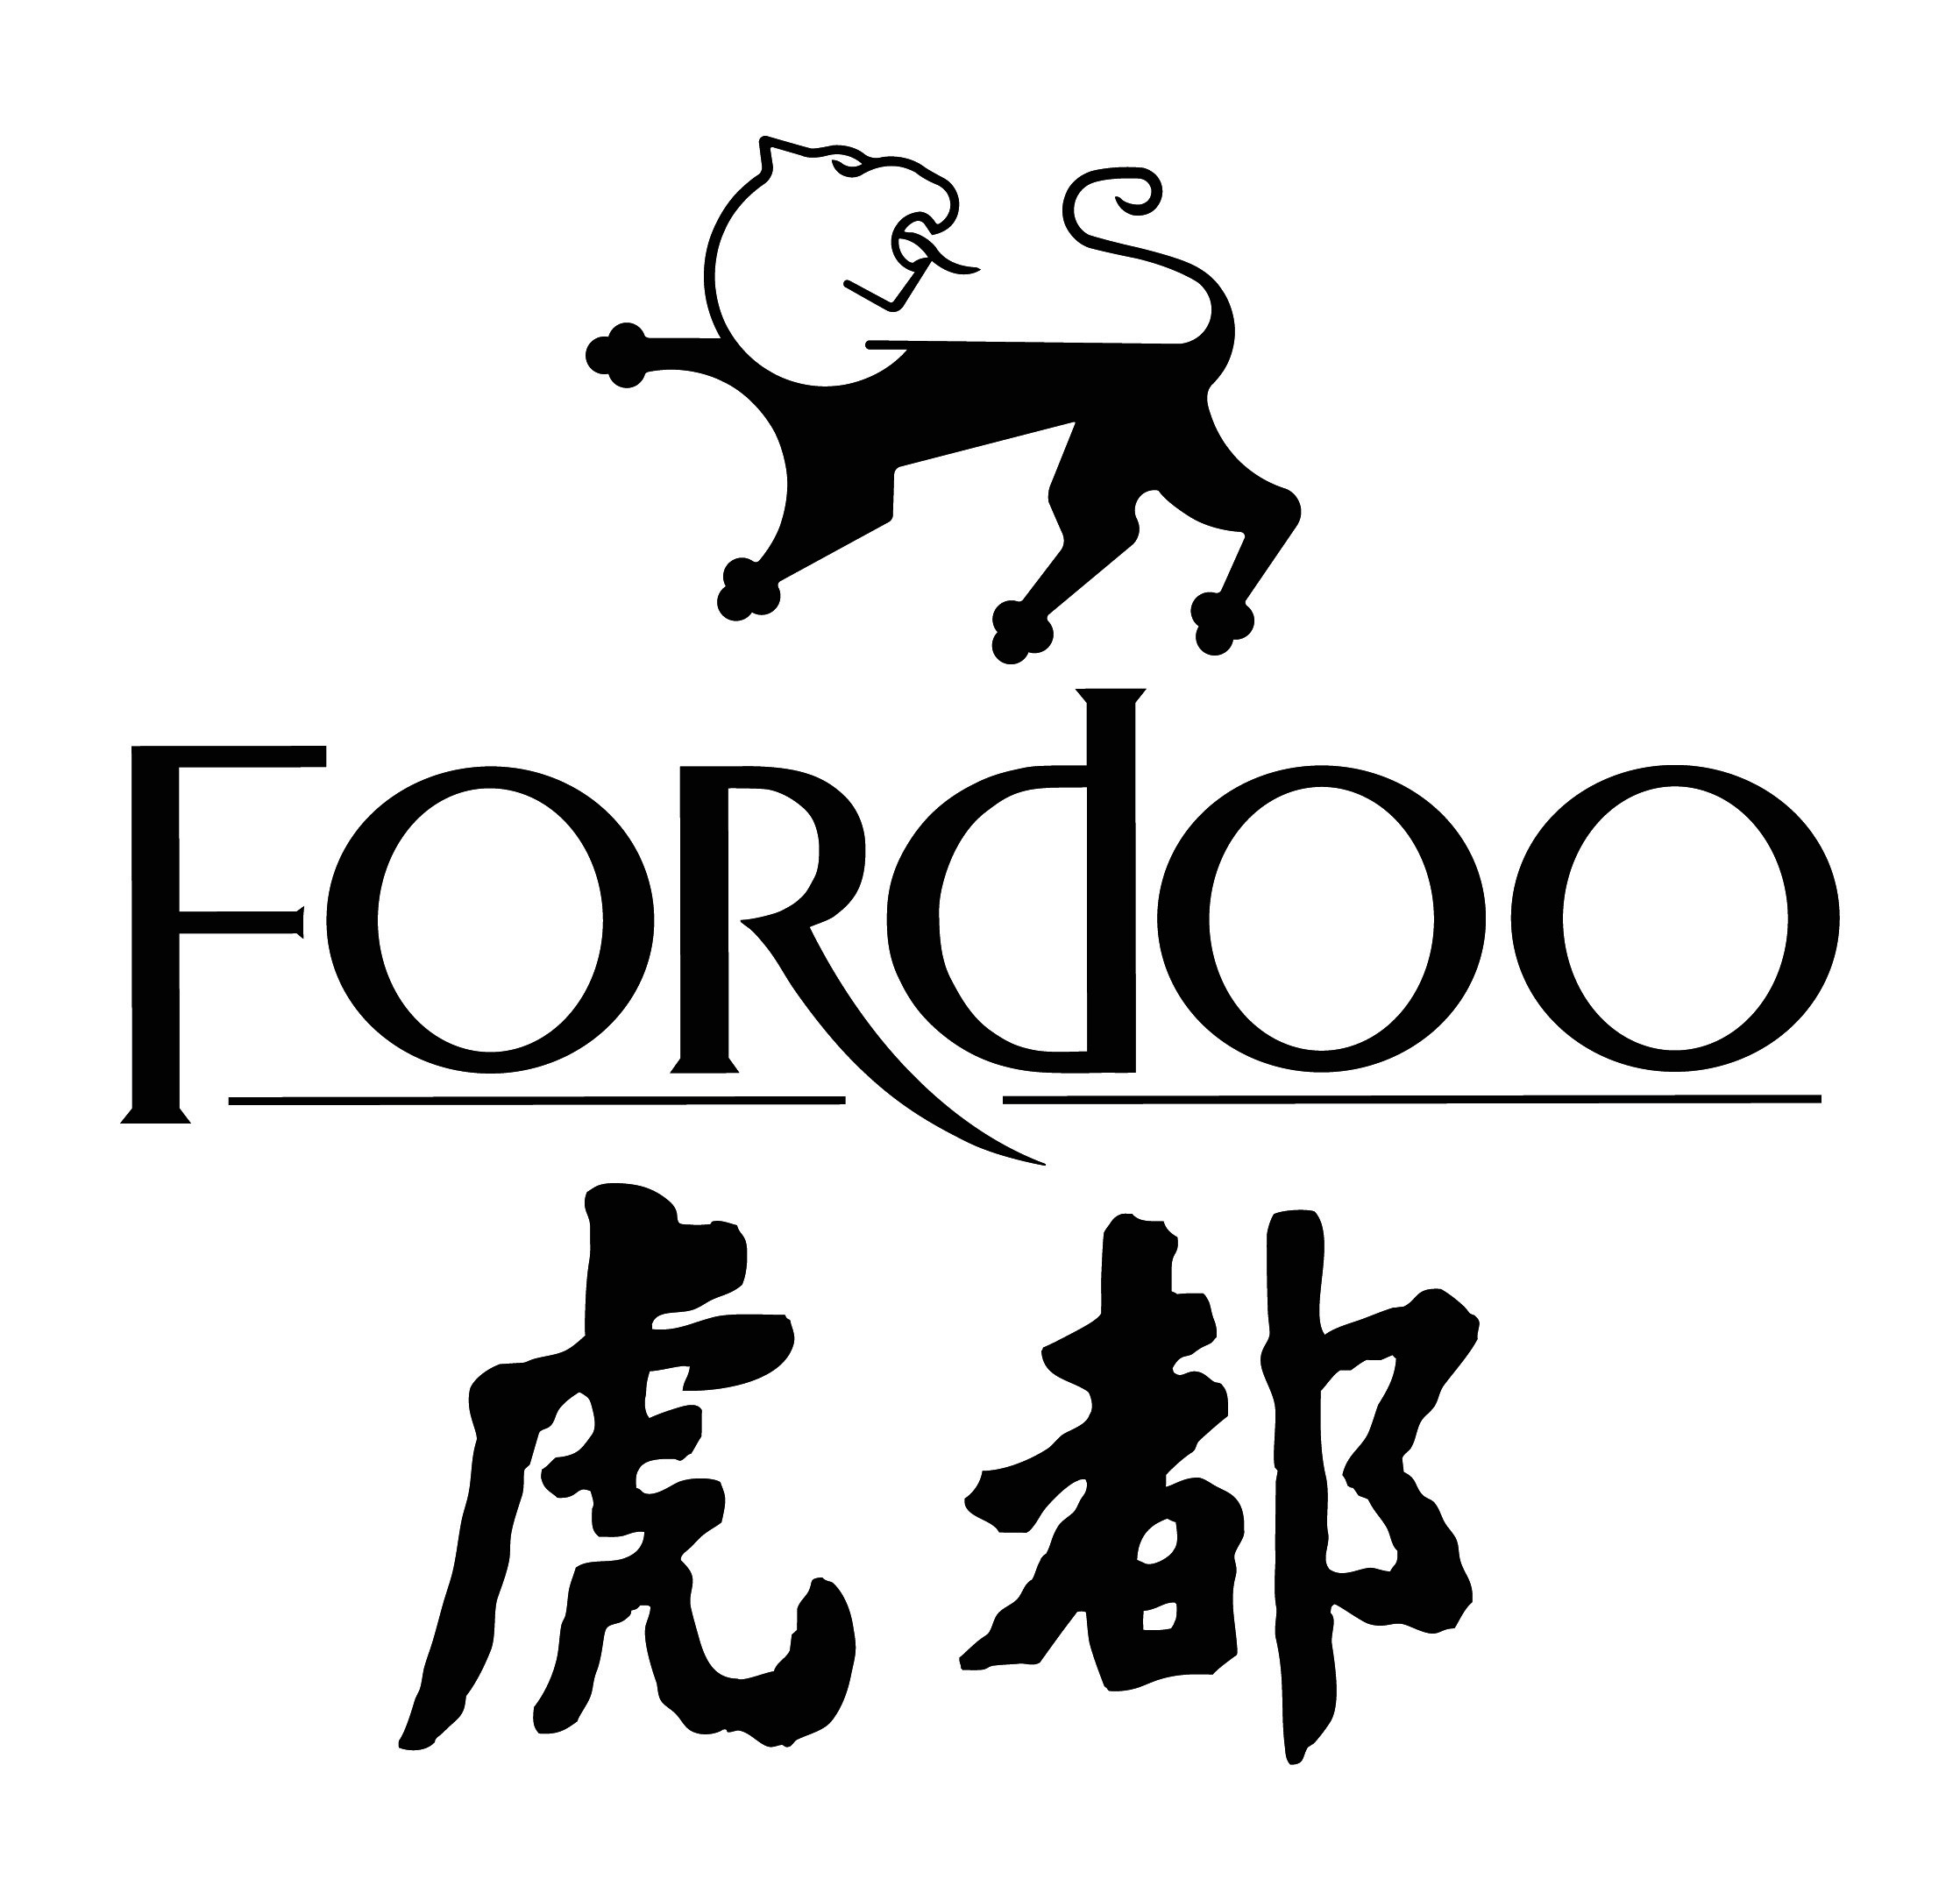 Fordoo-2.jpg